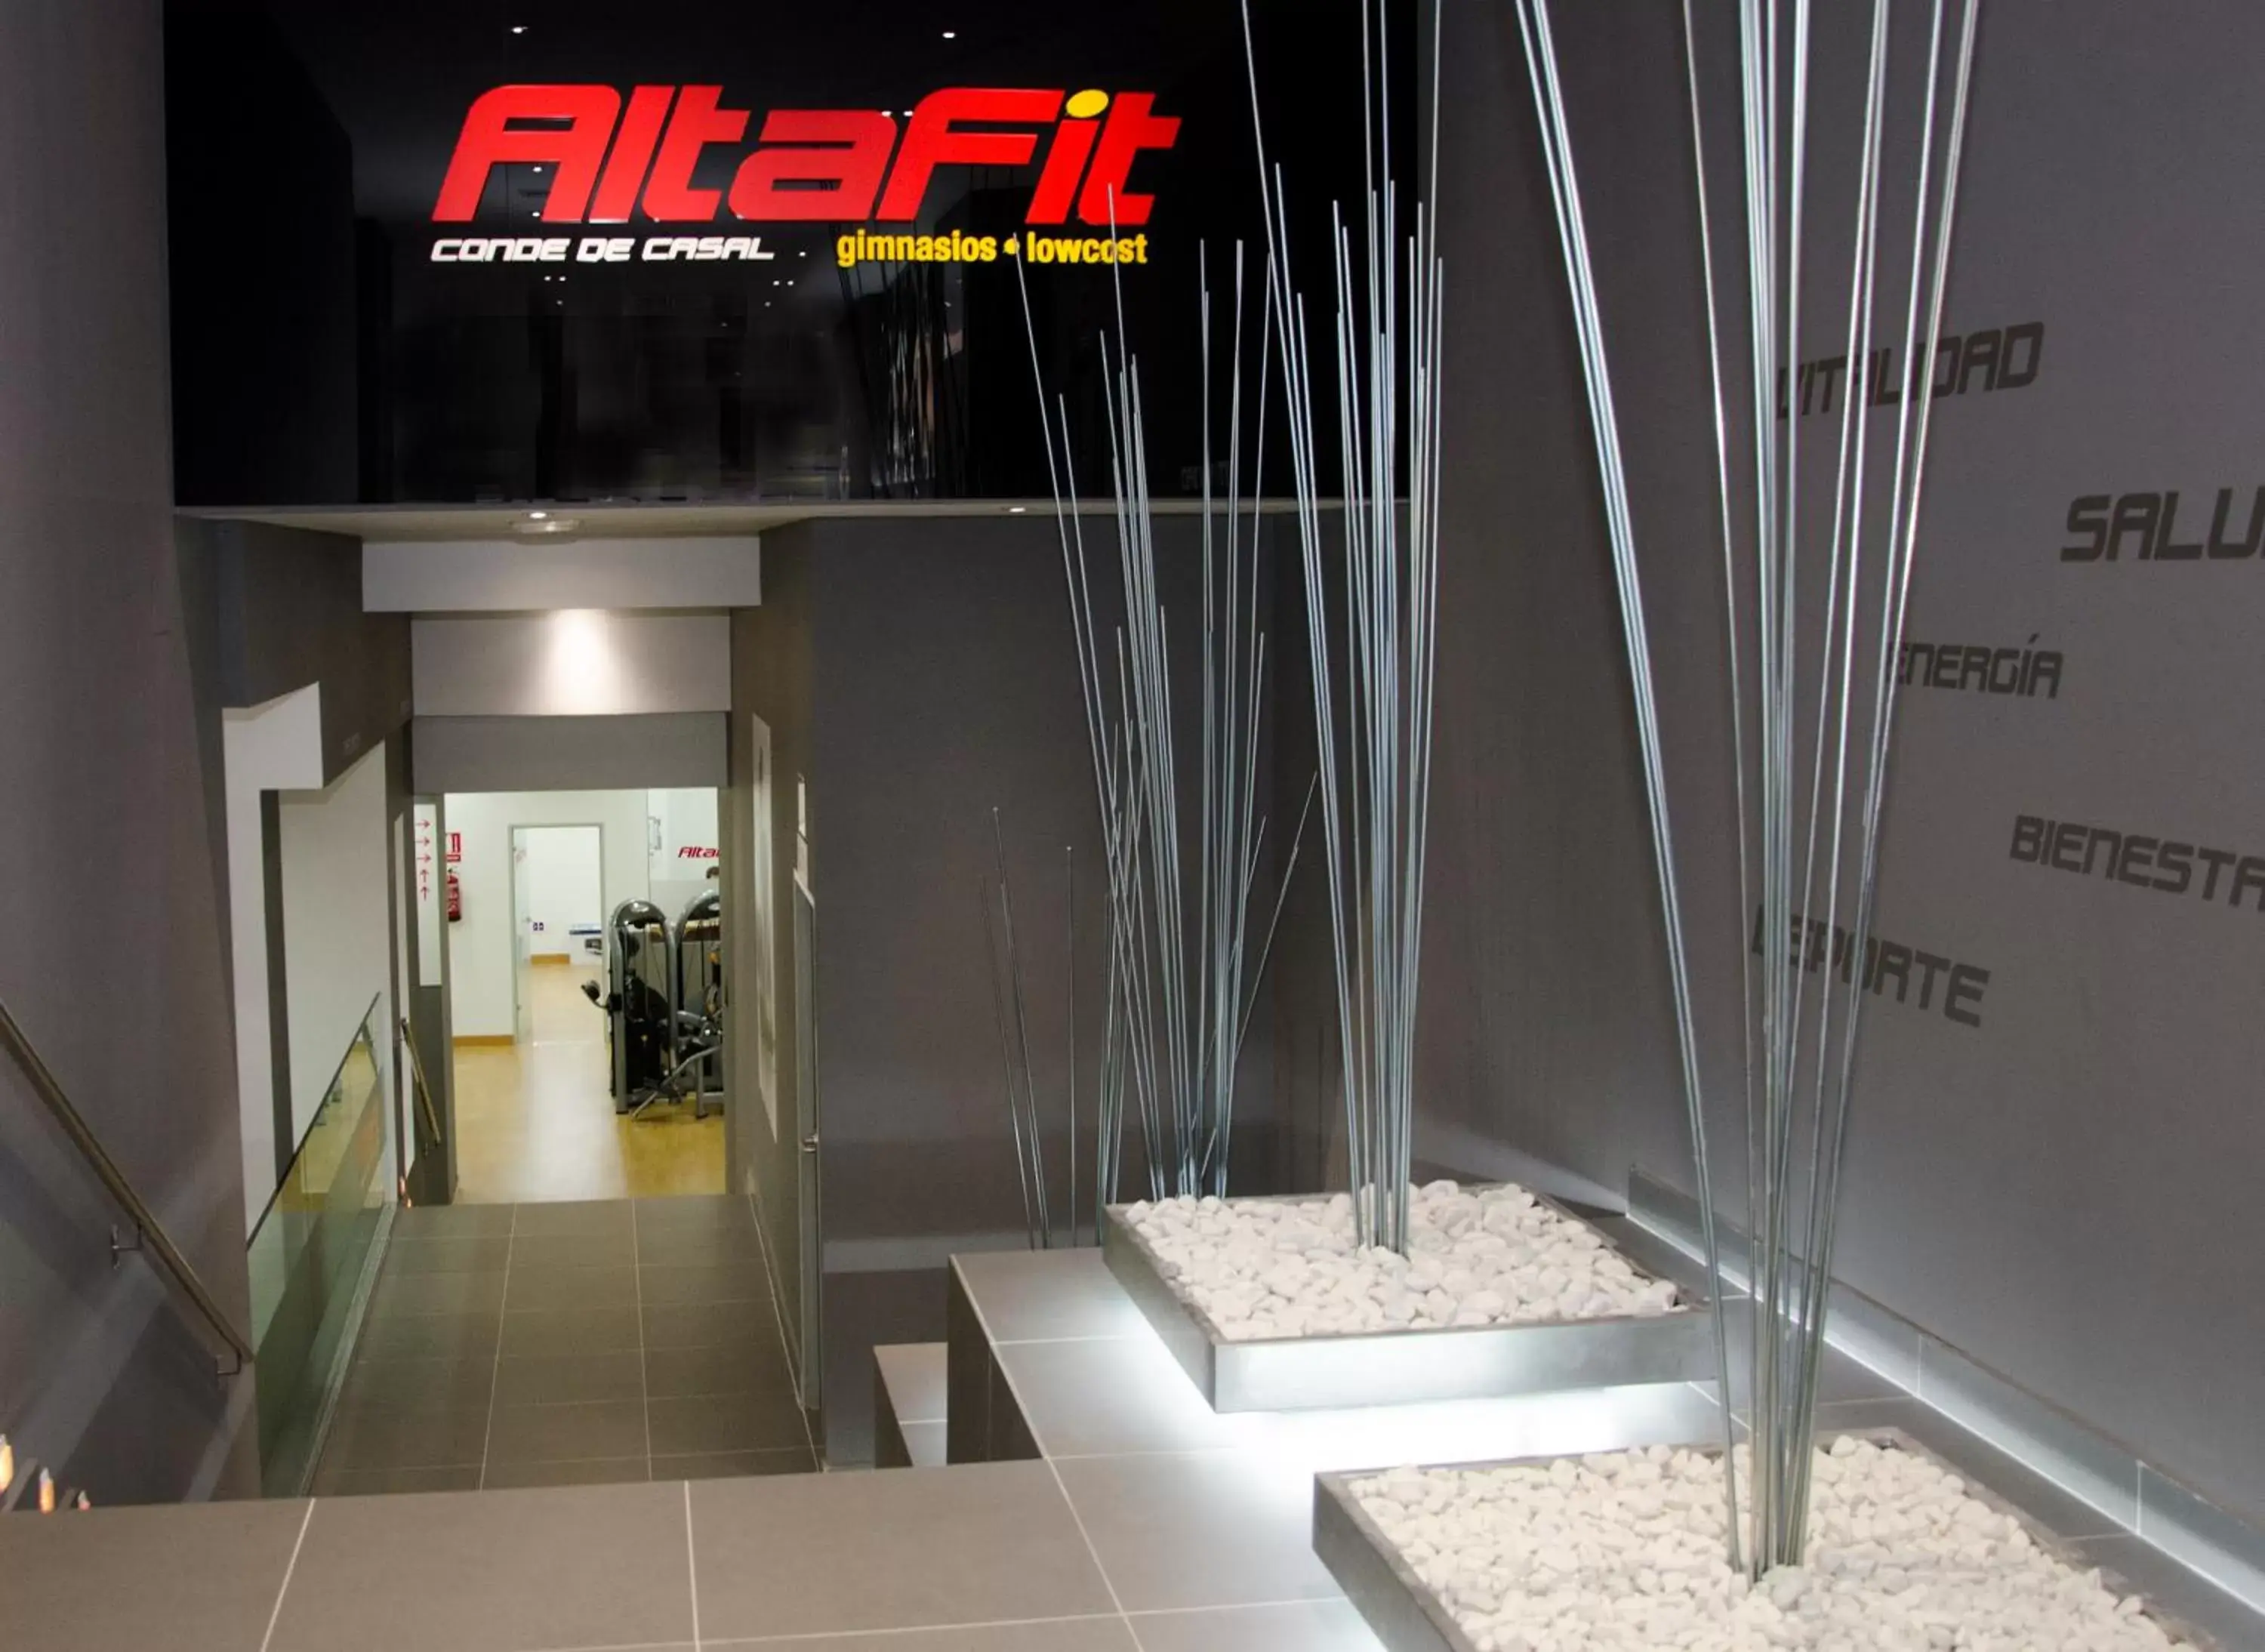 Fitness centre/facilities in Claridge Madrid